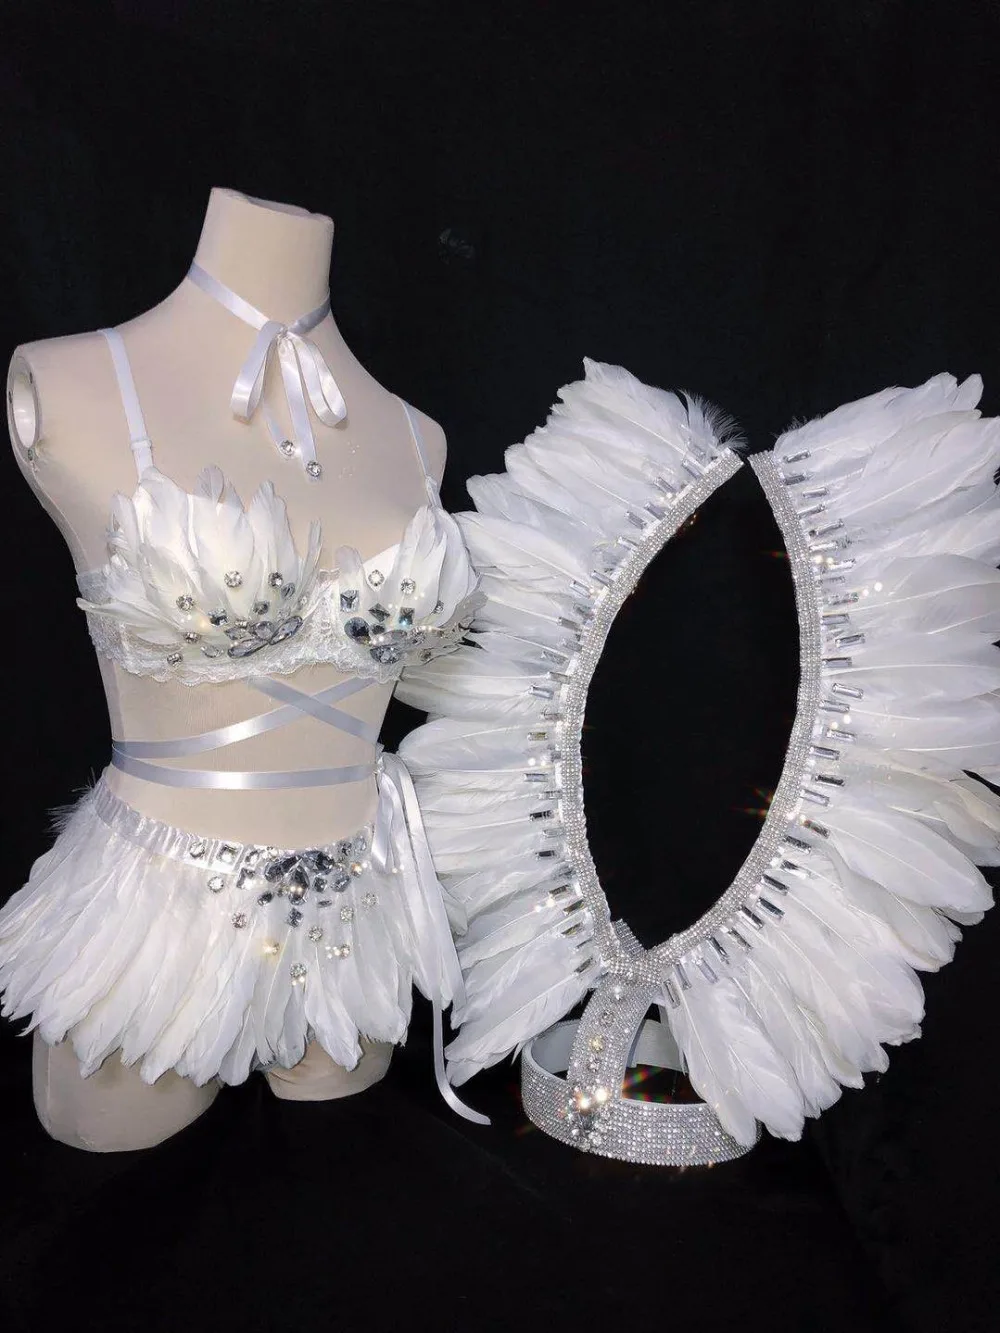 Белые перья кристаллы бикини головной убор Для женщин комплект ночной клуб бар певица Танцовщица Костюм подиум для моделей наряды